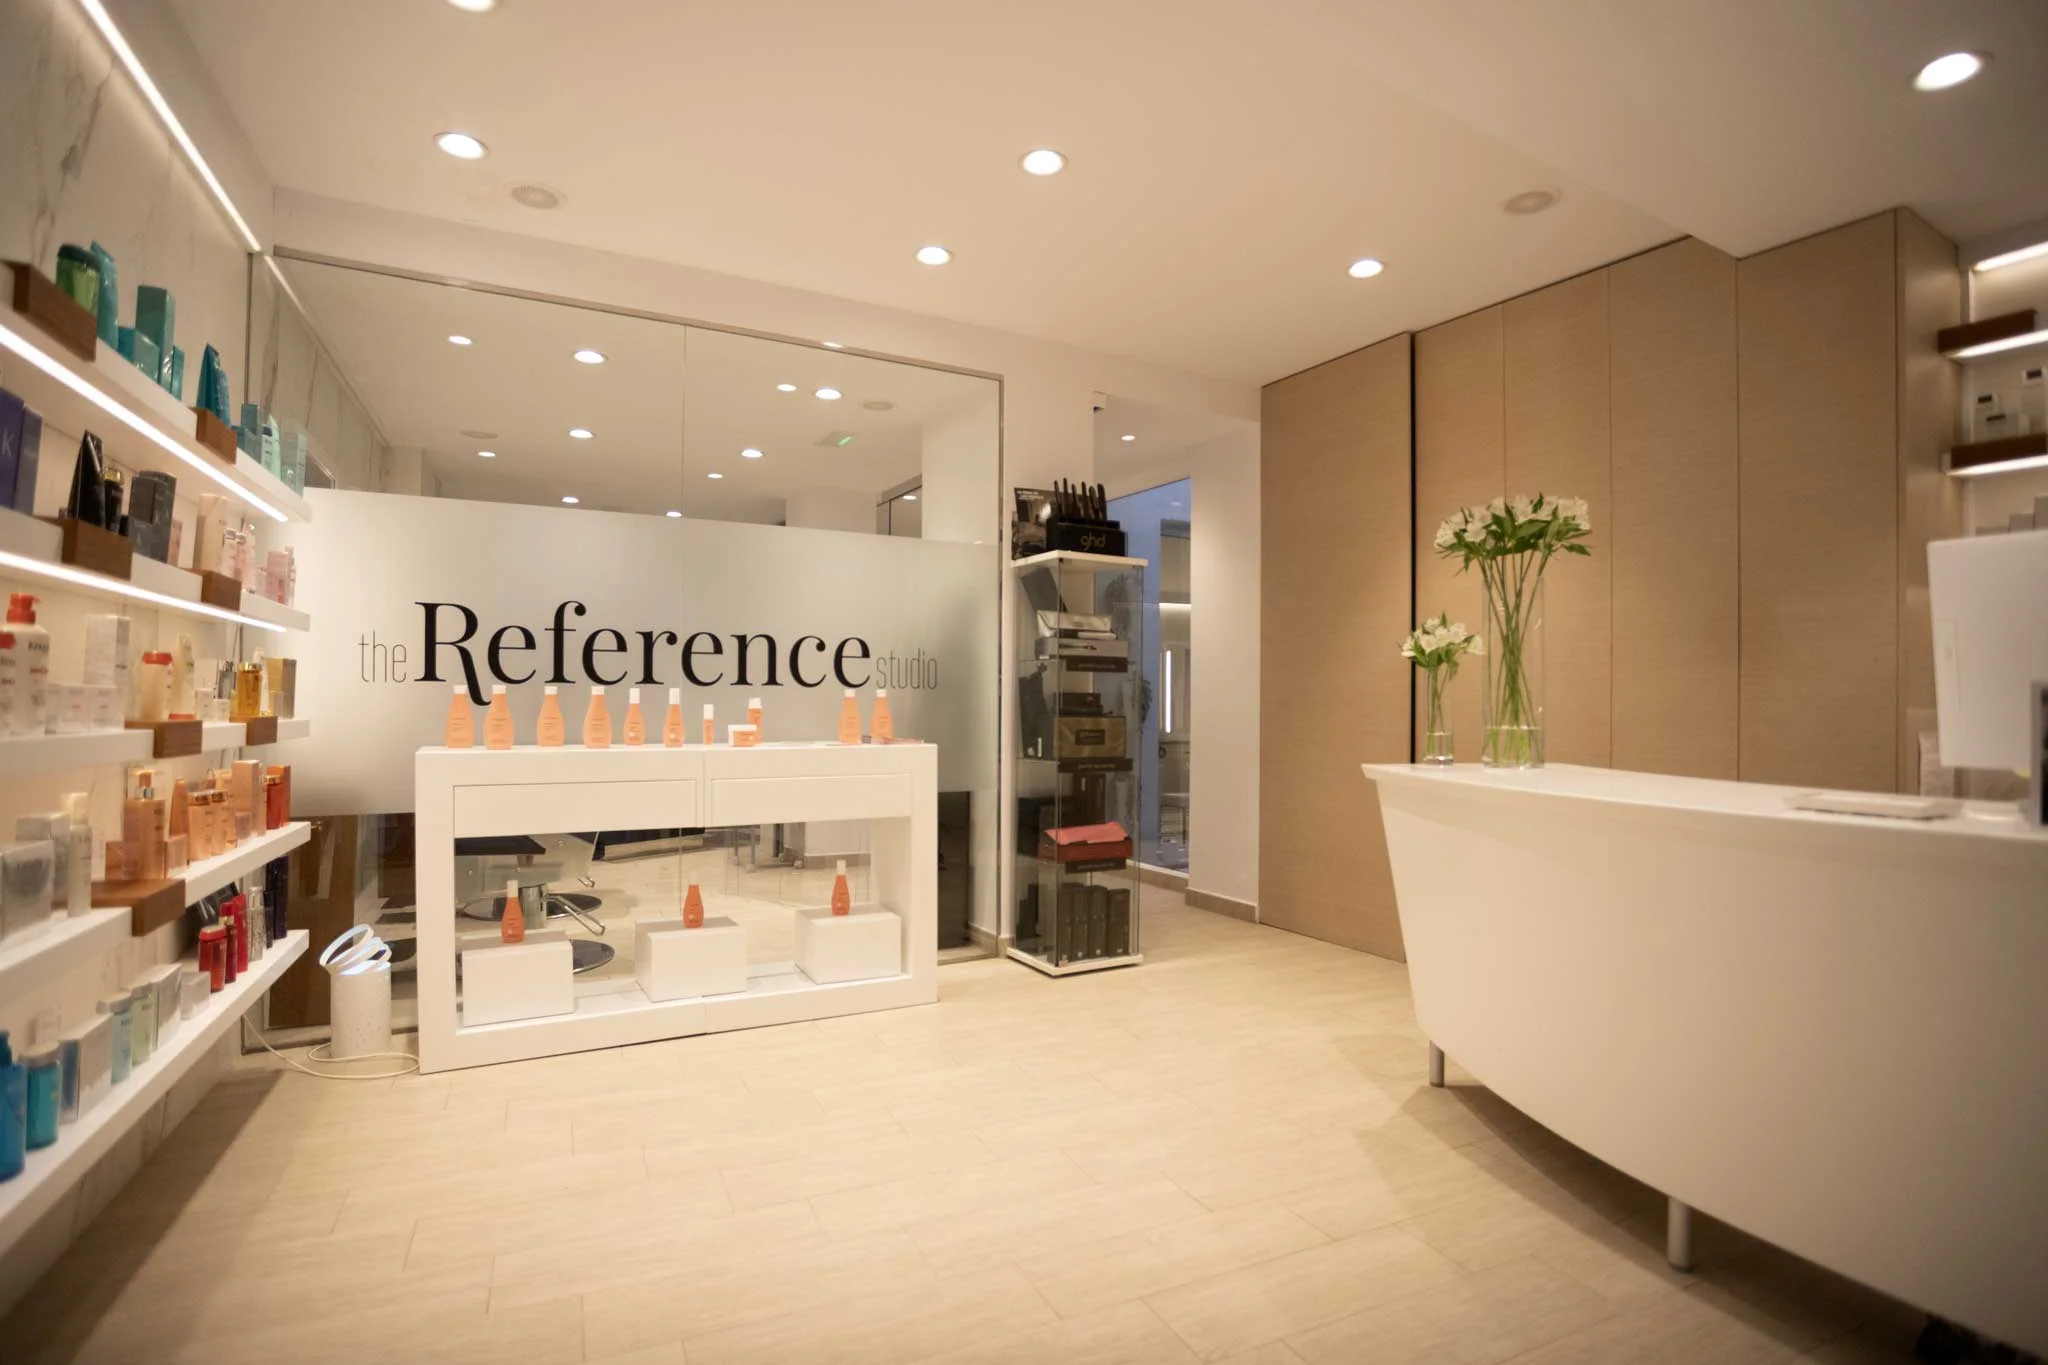 Salon peluqueria Denia – The Reference Studio